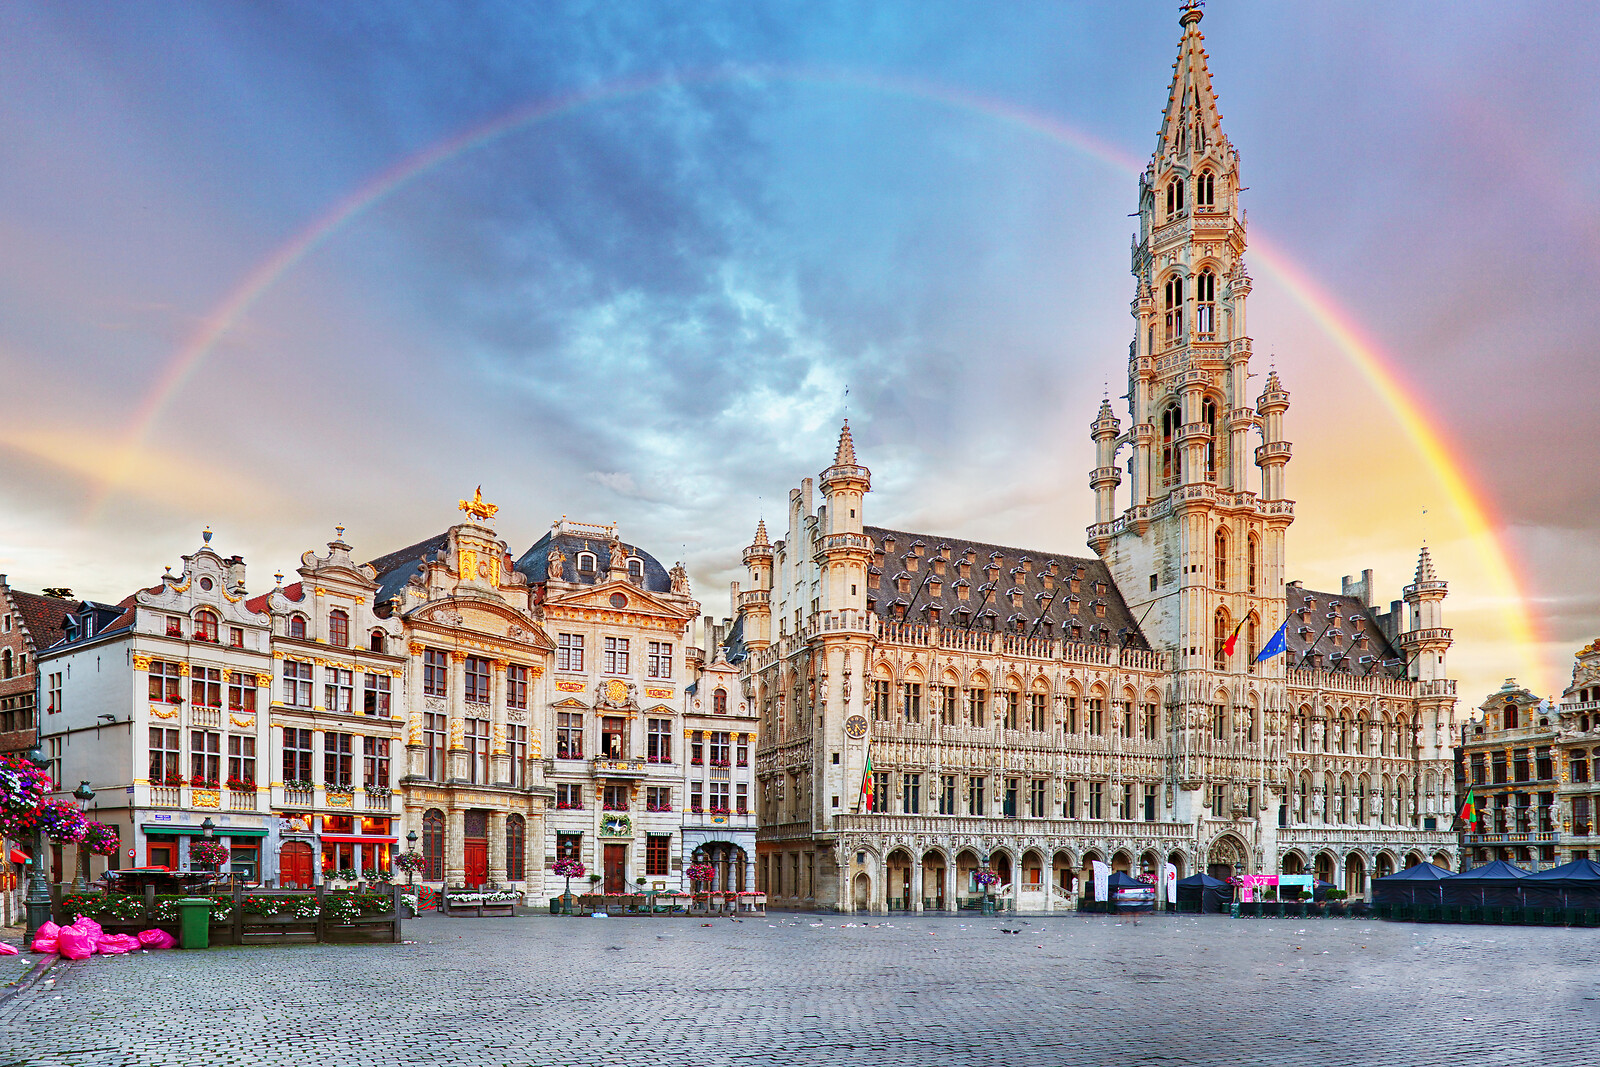 Se 3 Dages Ophold I Bruxelles - Rejse og Ophold - GO DREAM hos GO DREAM DK